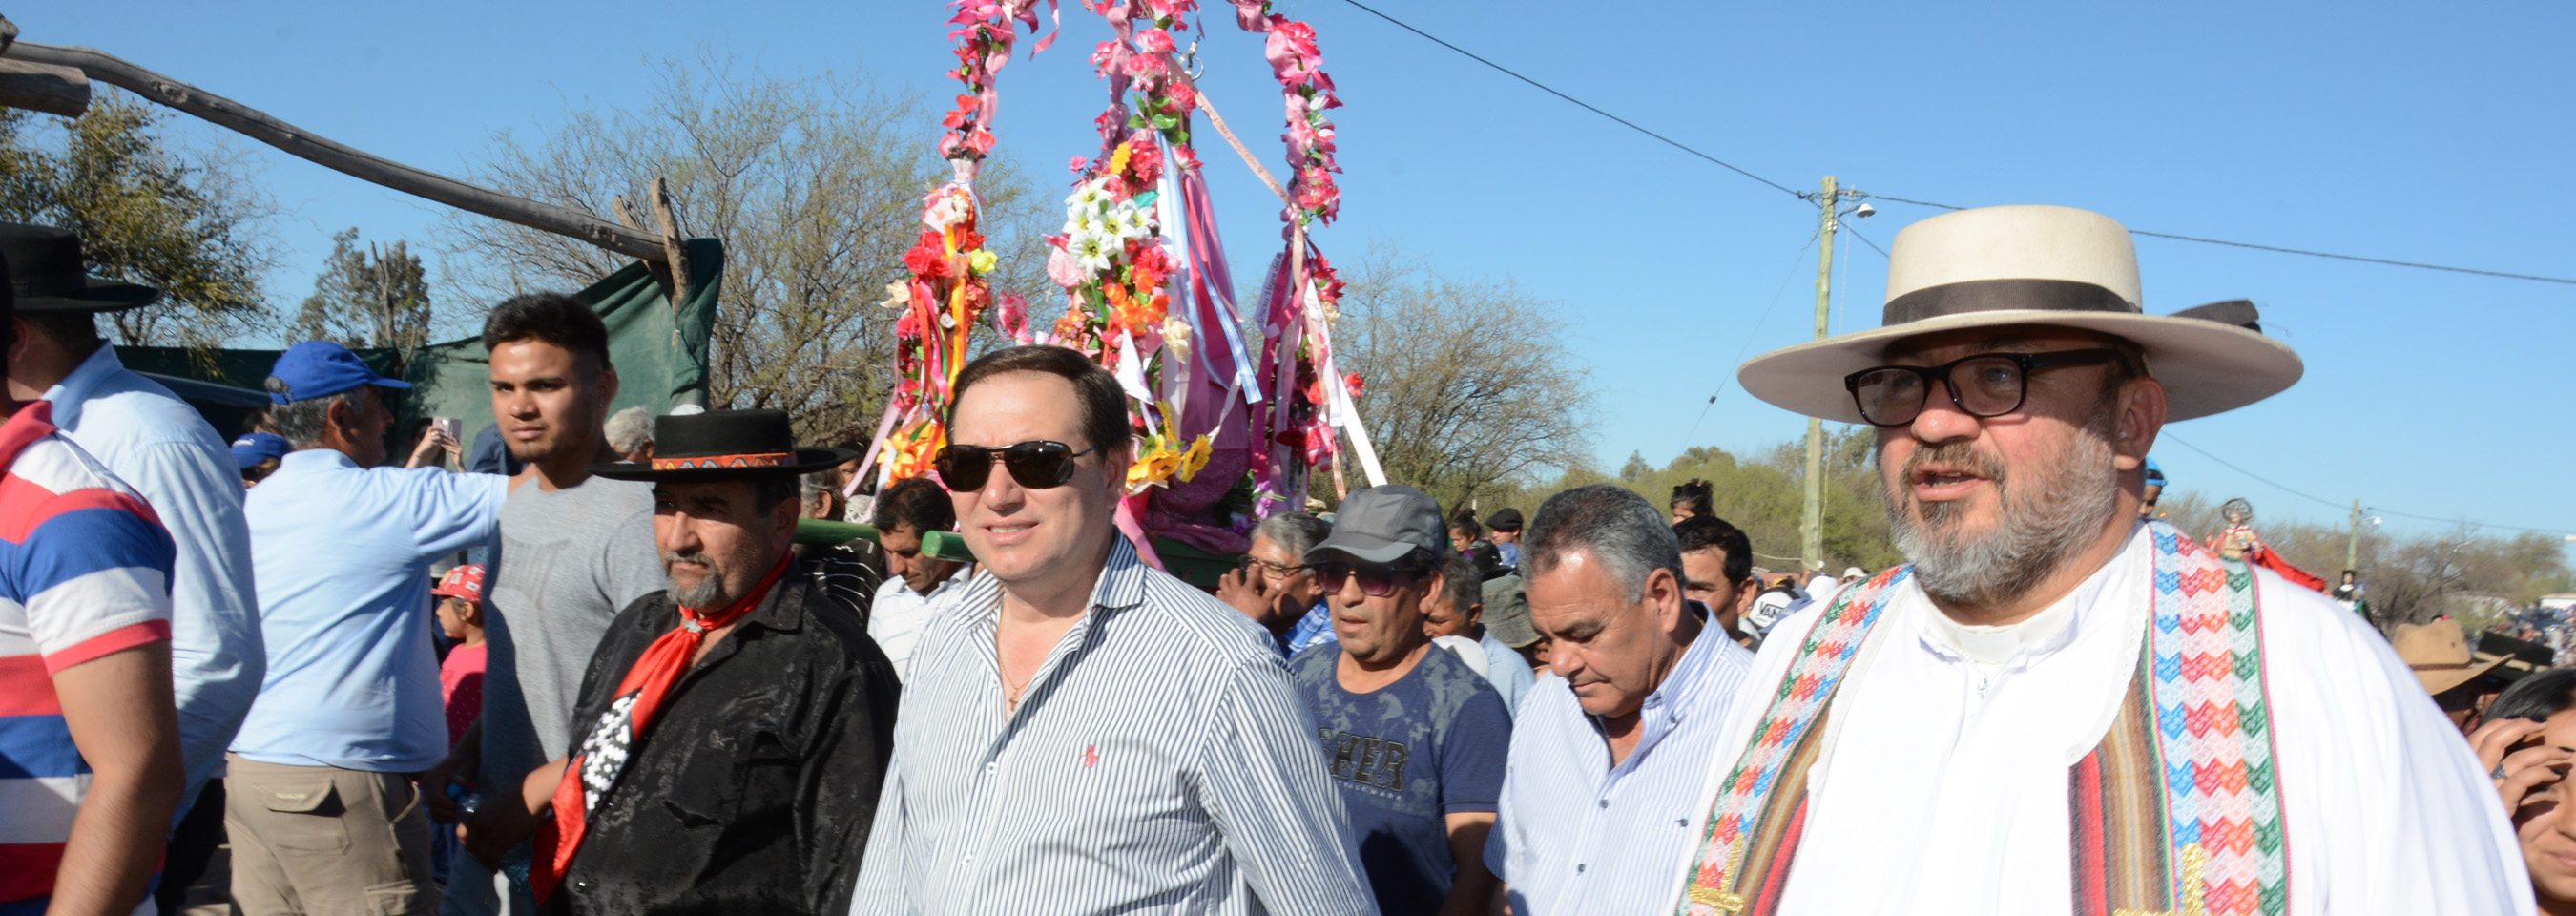 Miles de fieles festejaron en Lagunas del Rosario